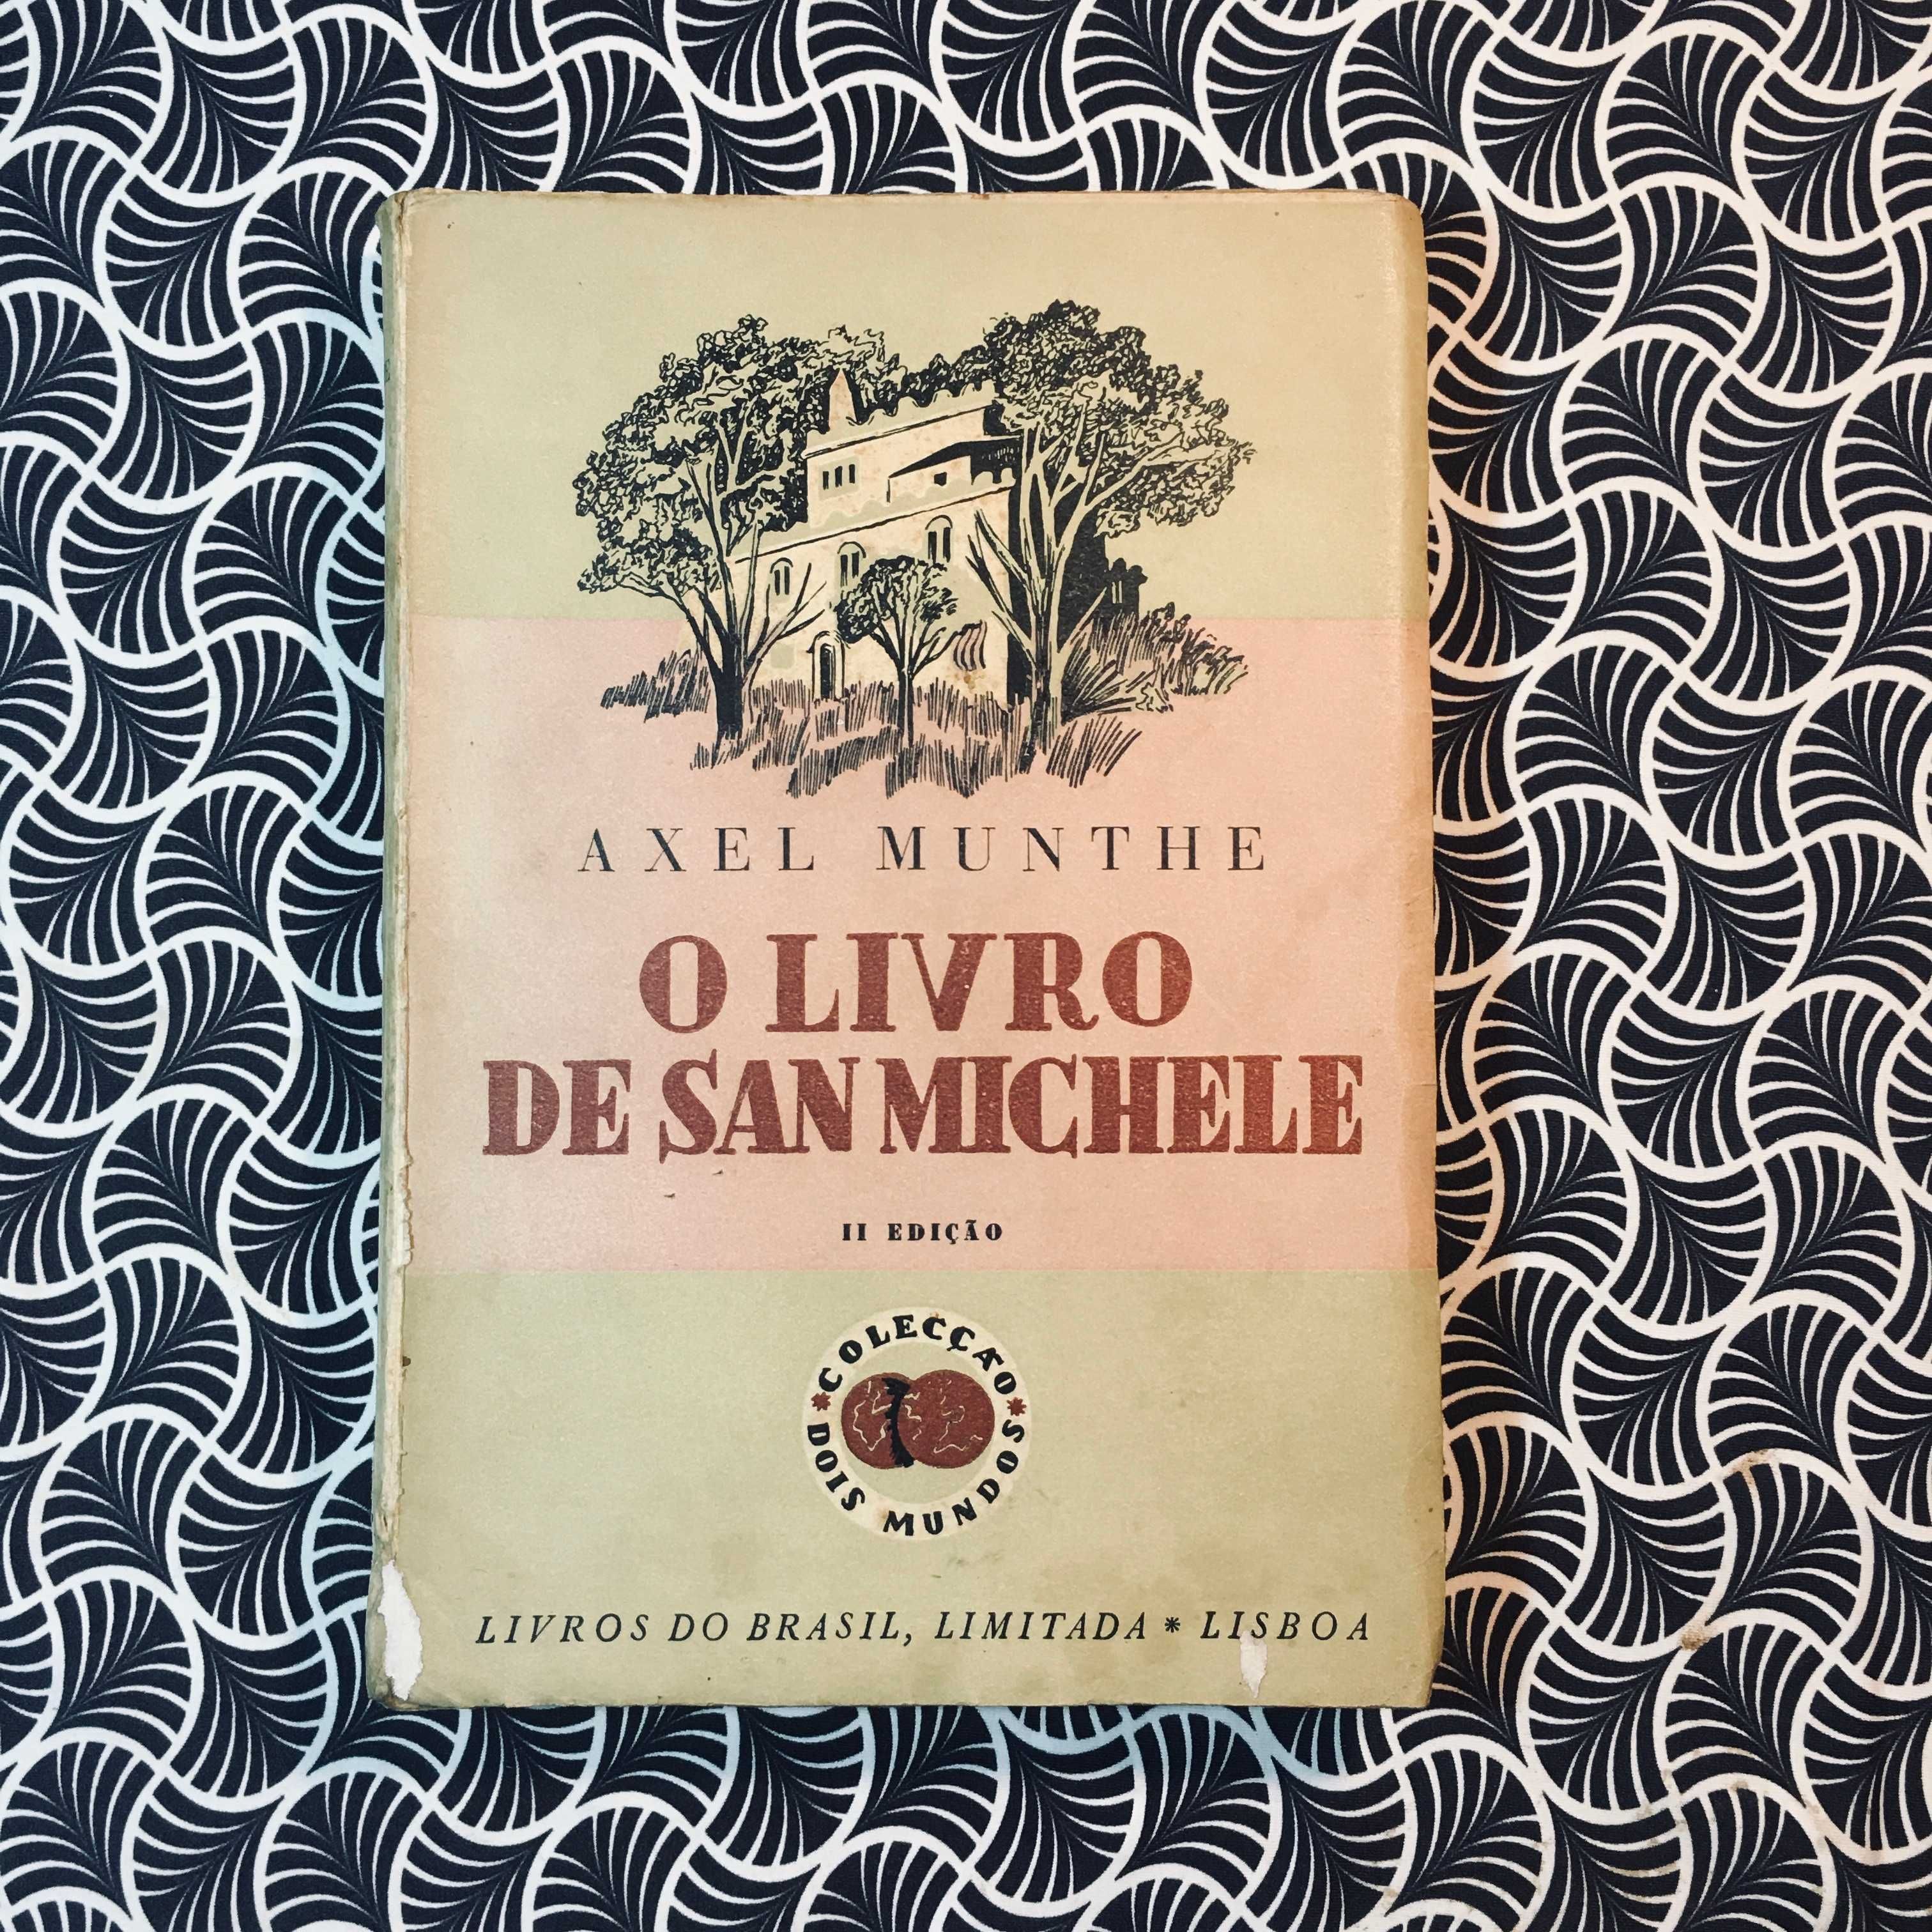 O Livro de San Michele - Axel Munthe (trad. de Jaime Cortesão)